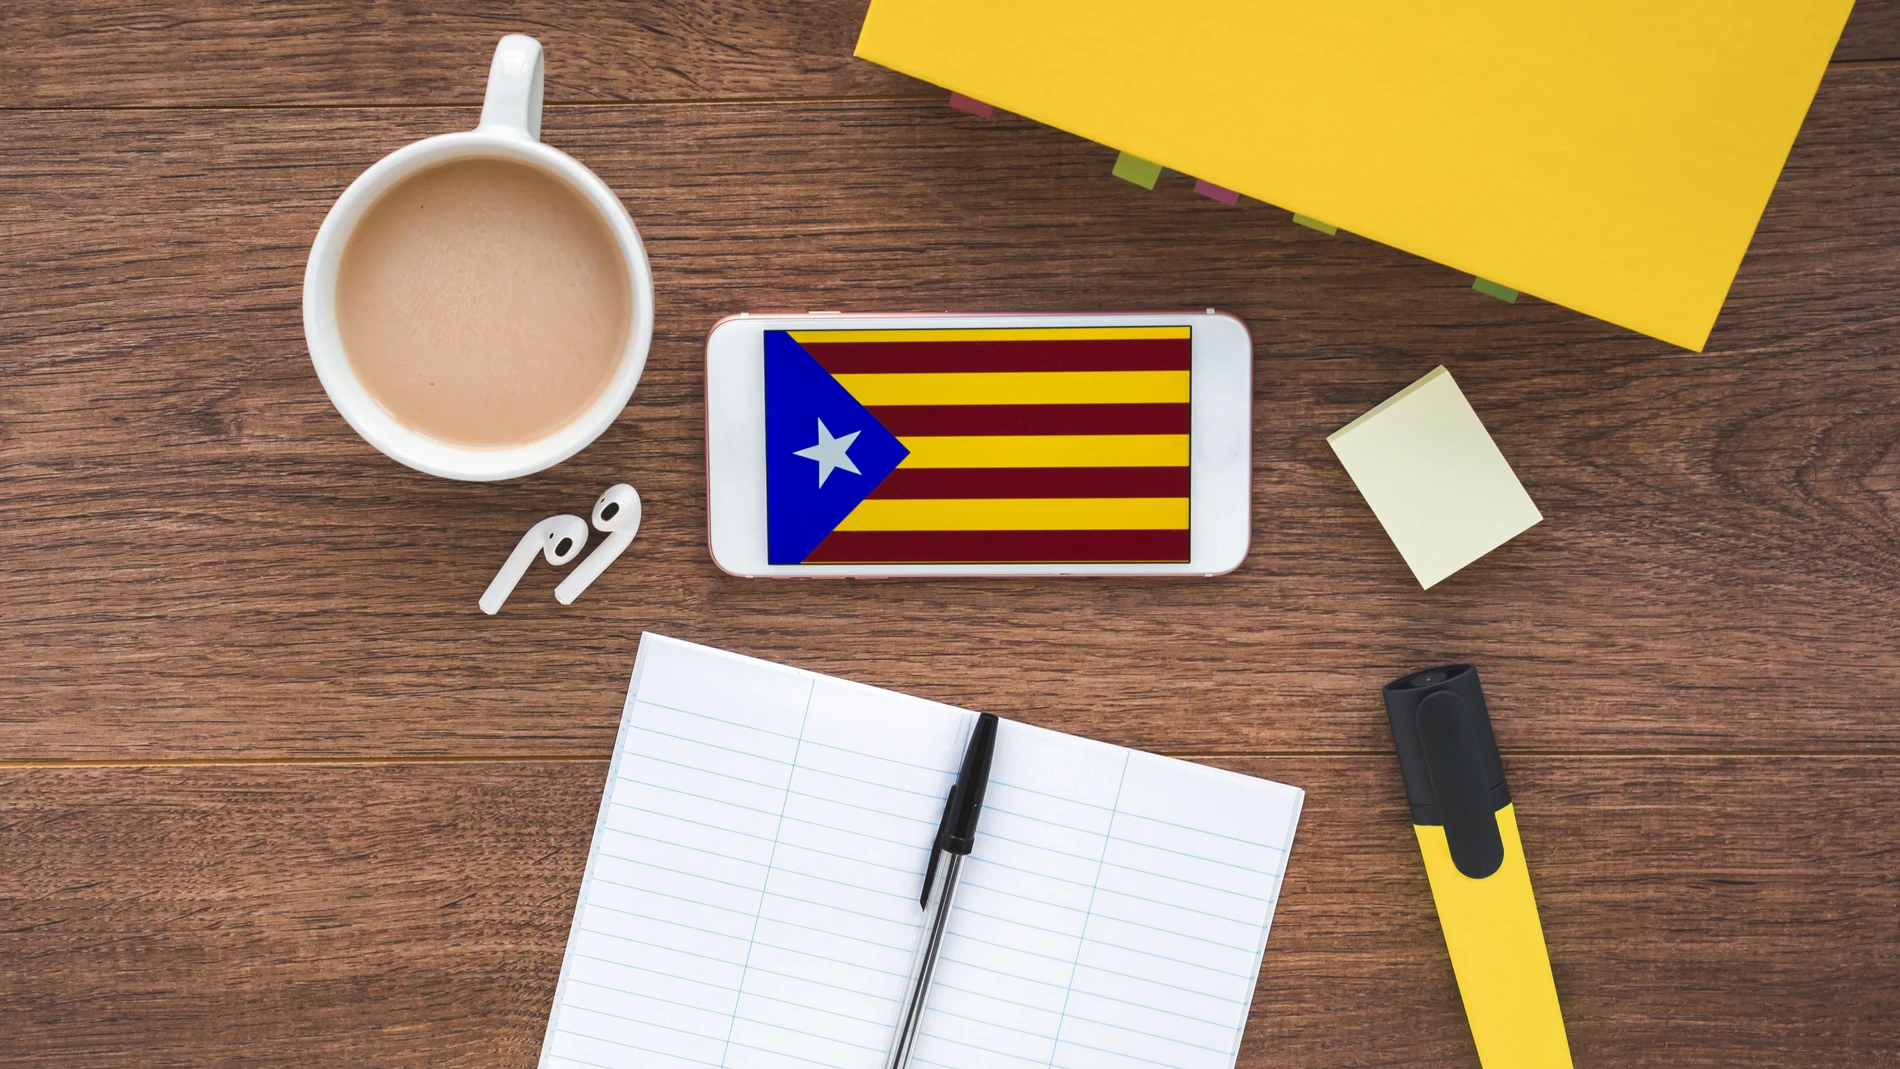 El catalán es lengua cooficial en Cataluña, junto al castellano